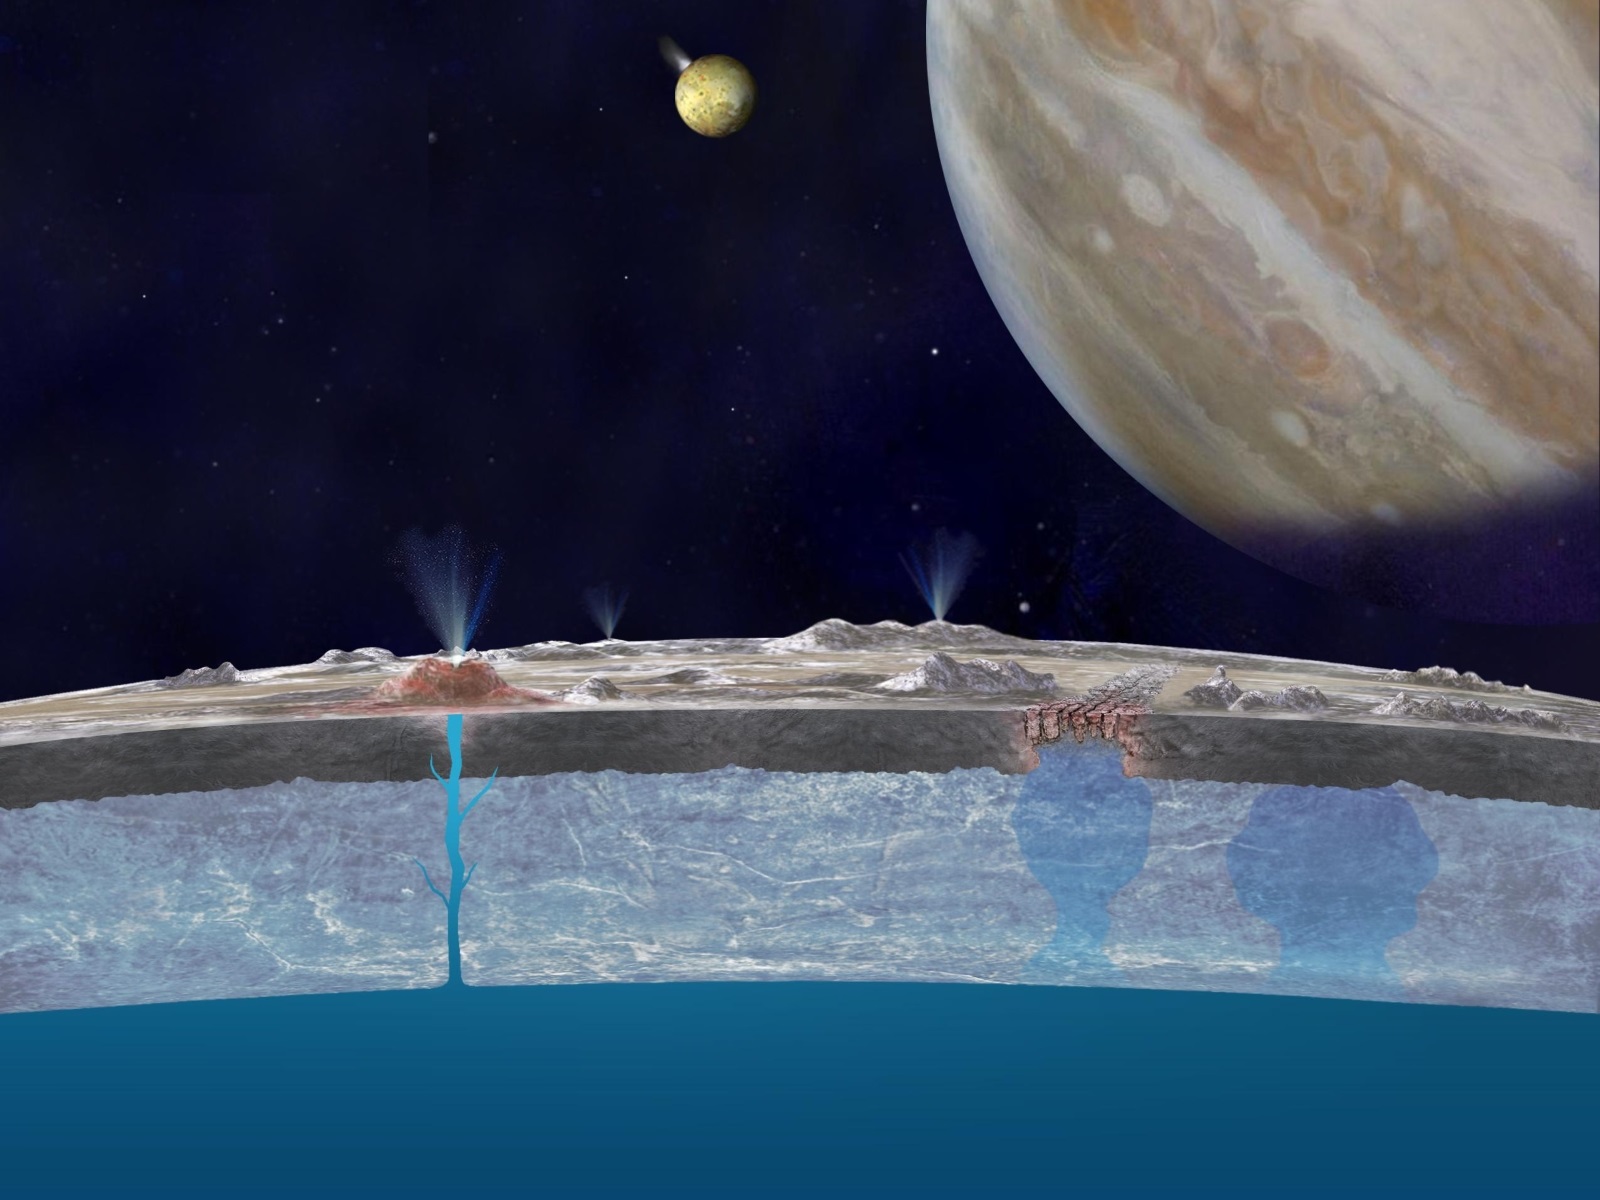 Illusztráció a Jupiter Európé holdjának jégkérge alatt található óceánról. Forrás: NASA/JPL